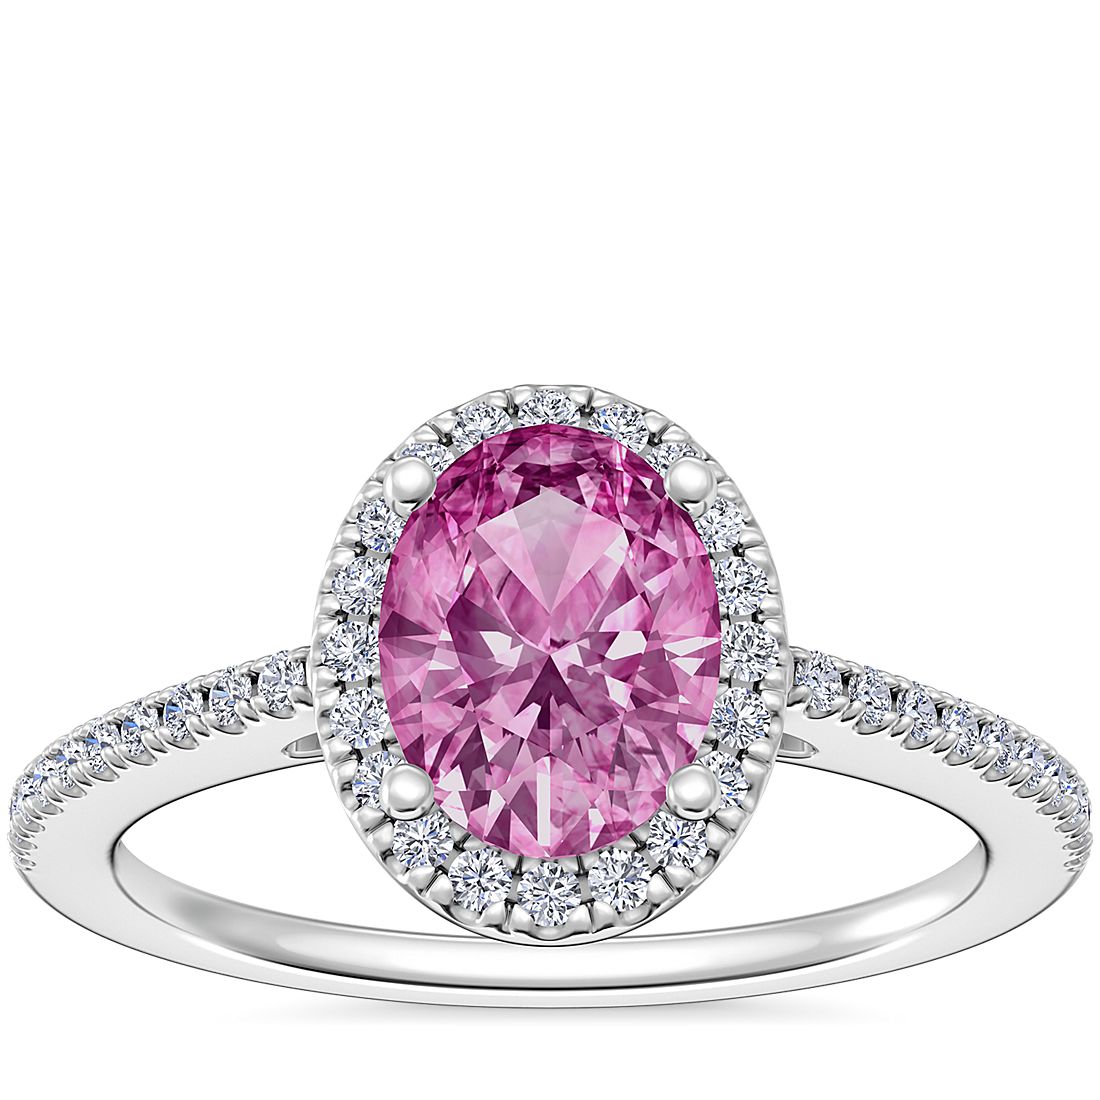 Anillo de compromiso clásico con halo de diamantes y zafiro ovalado de color rosado en platino (8x6 mm)